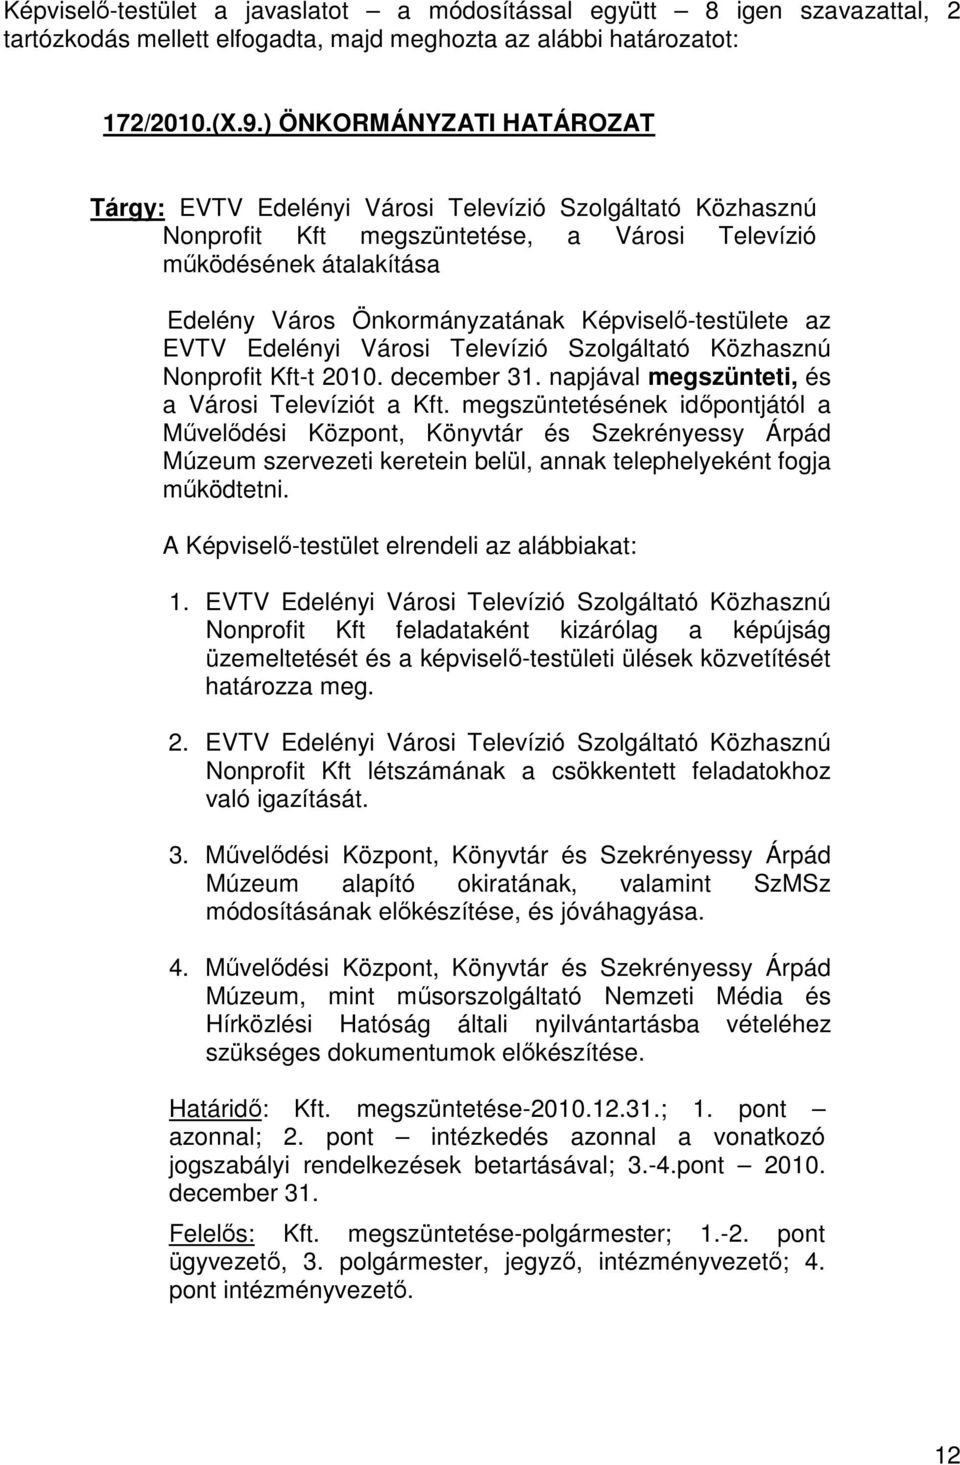 Képviselő-testülete az EVTV Edelényi Városi Televízió Szolgáltató Közhasznú Nonprofit Kft-t 2010. december 31. napjával megszünteti, és a Városi Televíziót a Kft.